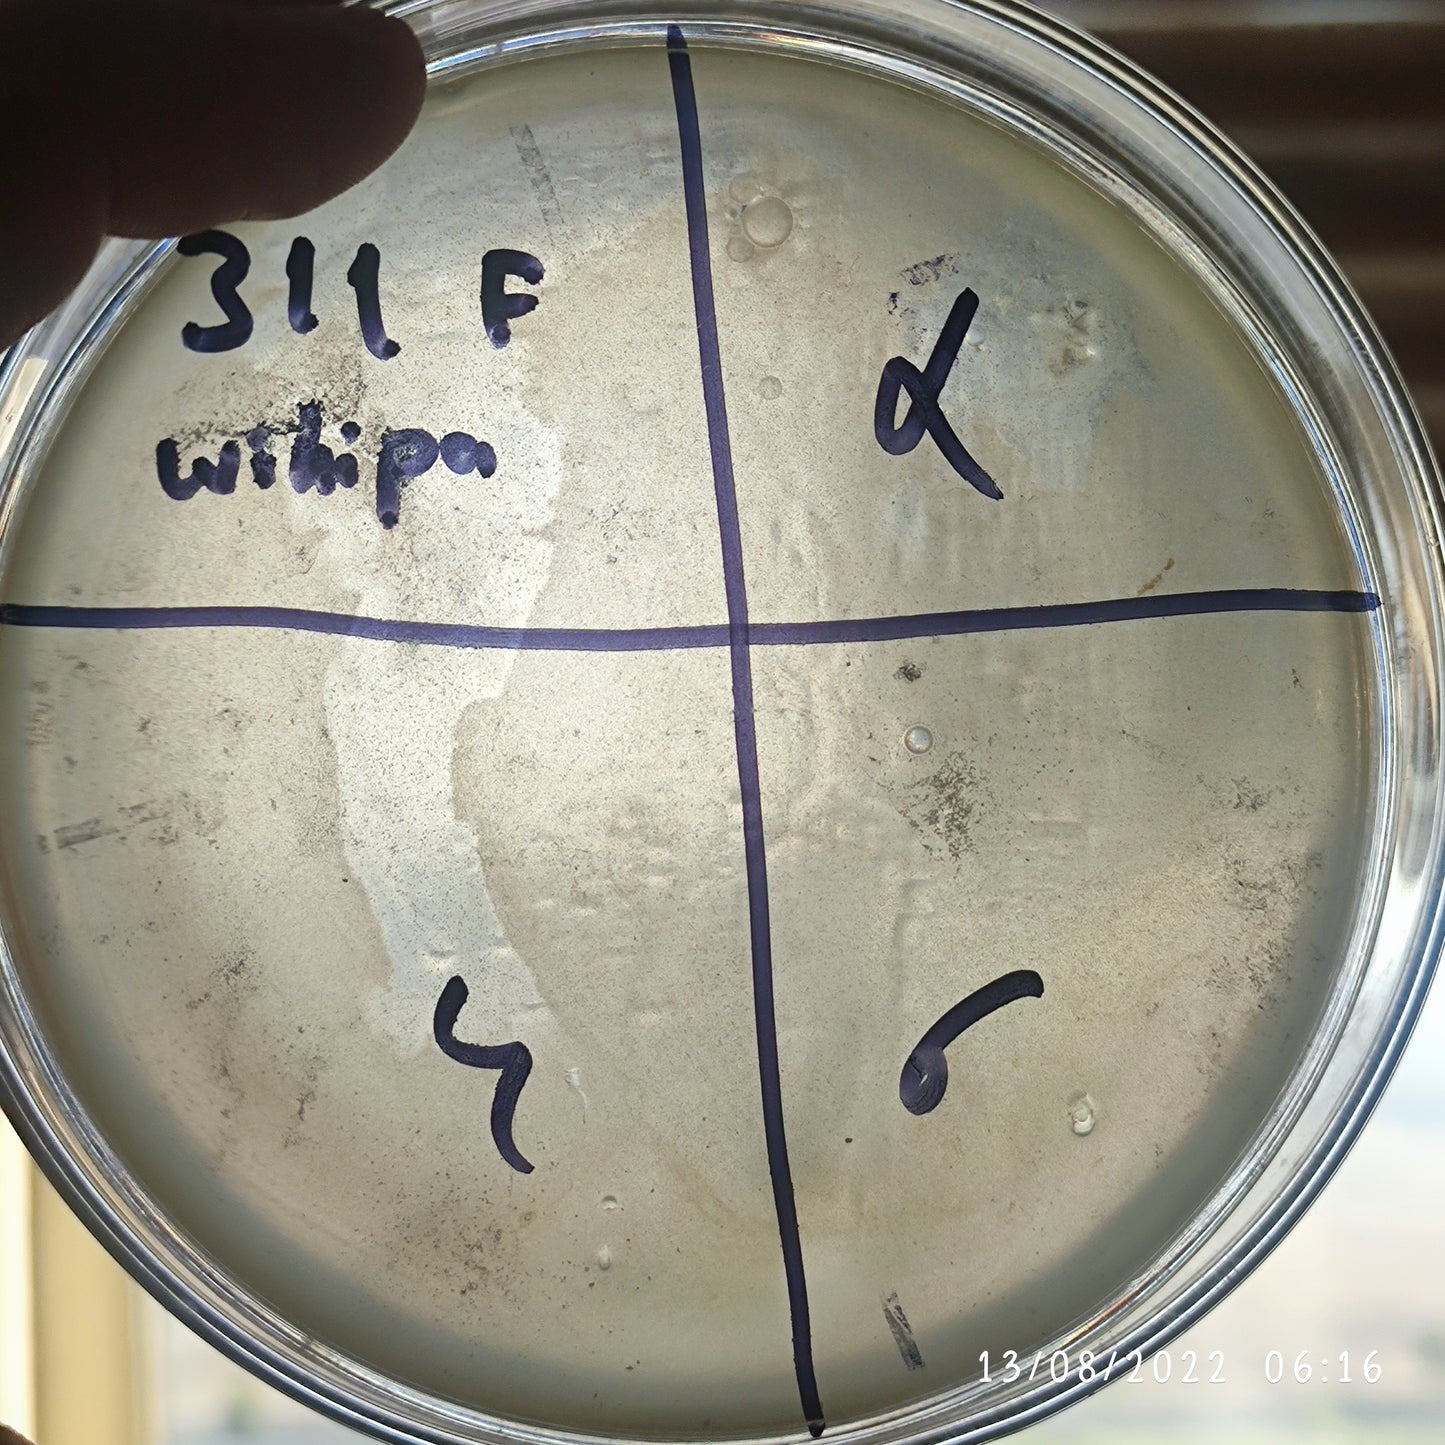 Wohlfahrtiimonas chitiniclastica bacteriophage 200311F